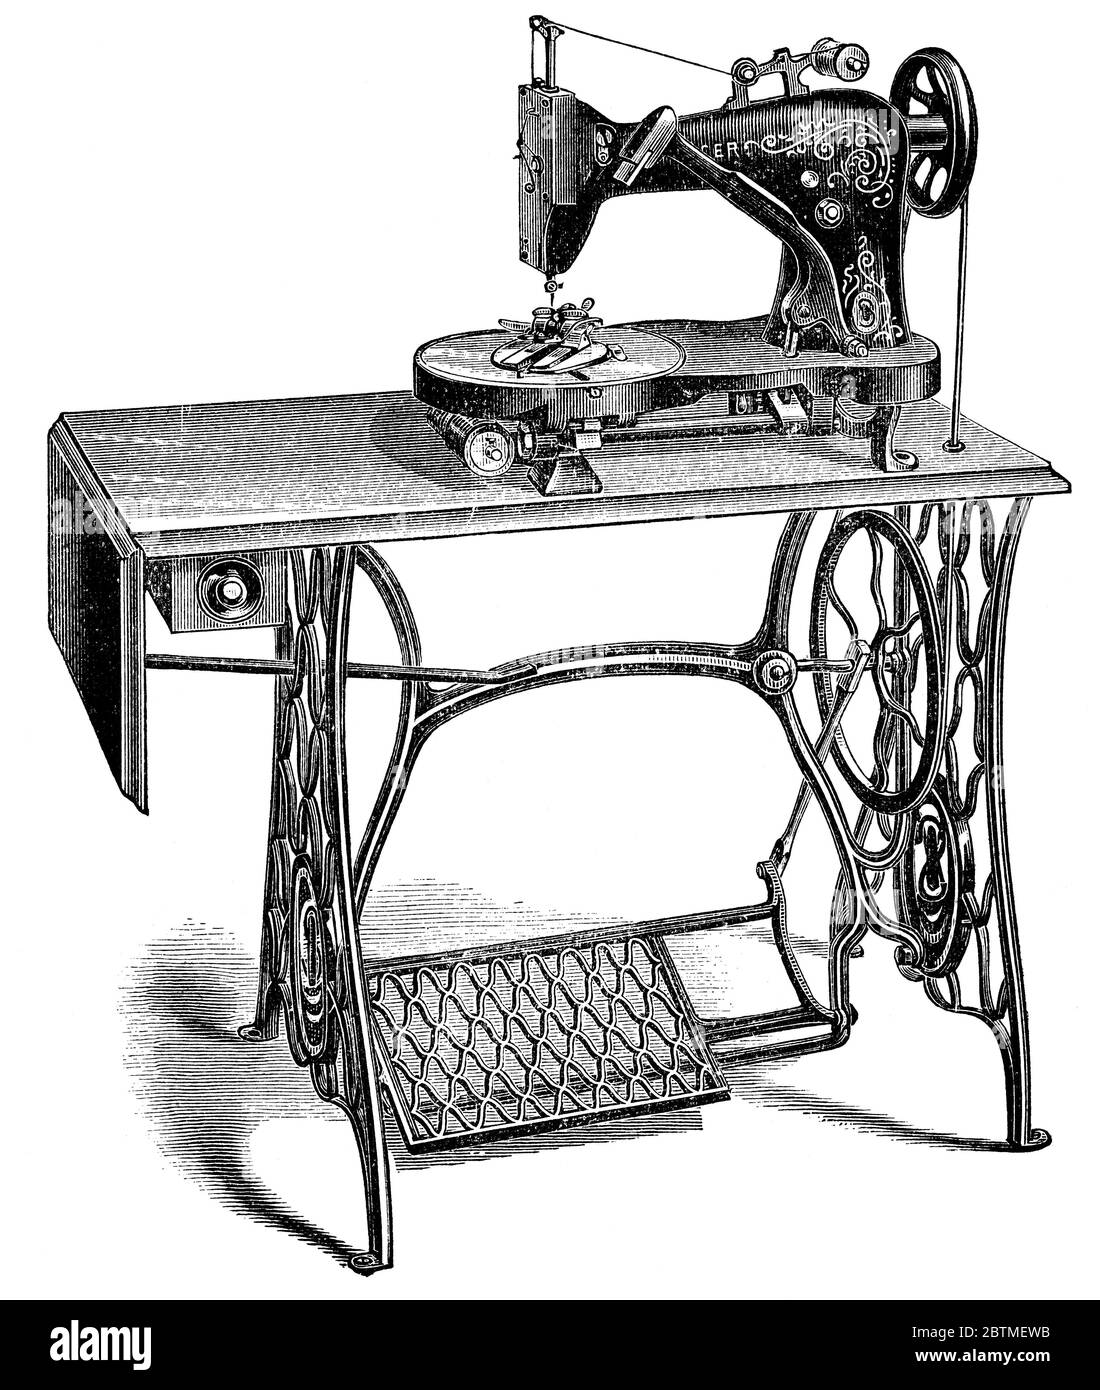 Machine à coudre de boutonnières par Singer. Illustration du XIXe siècle. Fond blanc. Banque D'Images